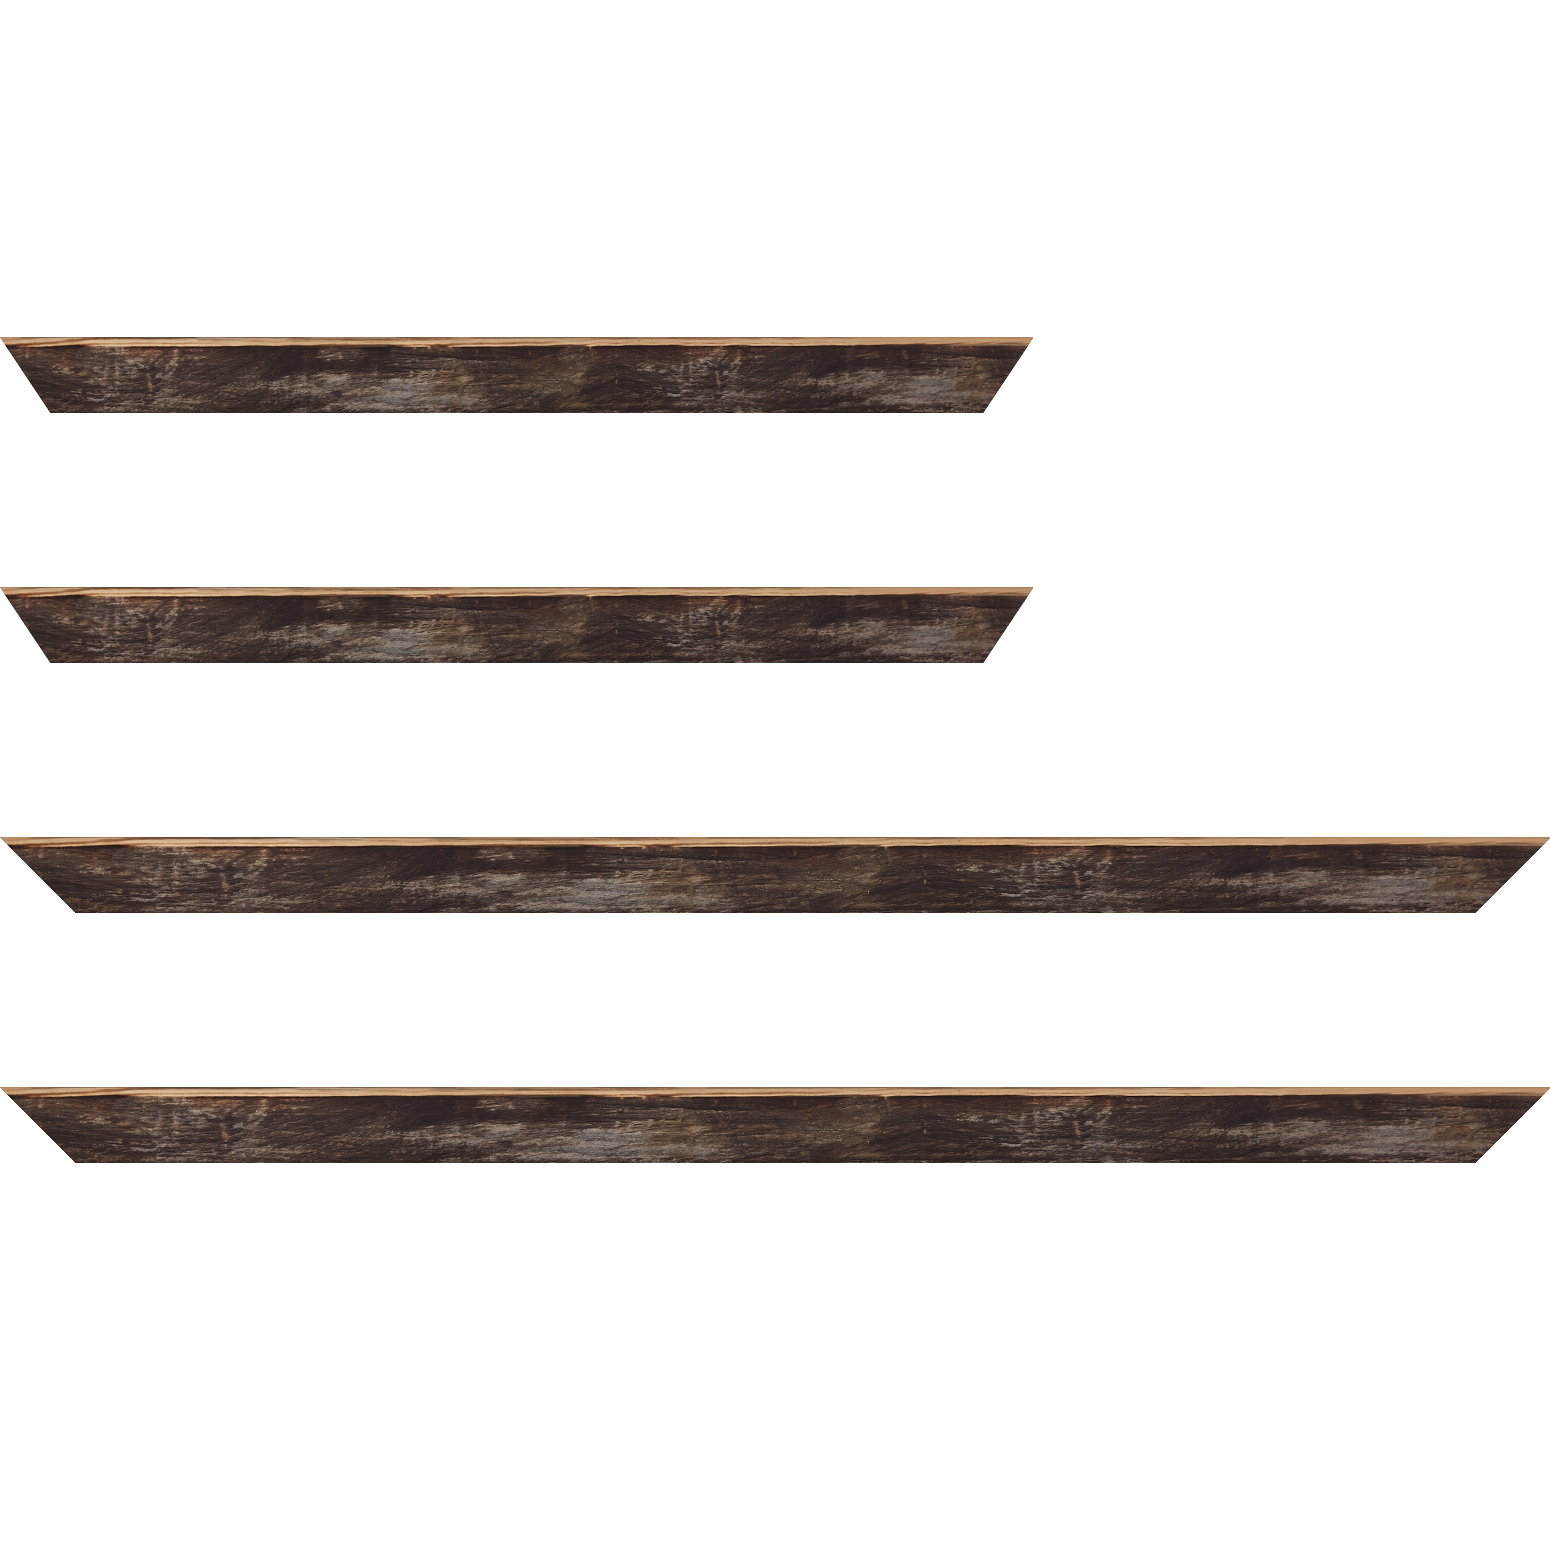 Baguette bois profil arrondi en pente plongeant largeur 2.4cm couleur noir ébène effet ressuyé, angle du cadre extérieur filet naturel - 40x60